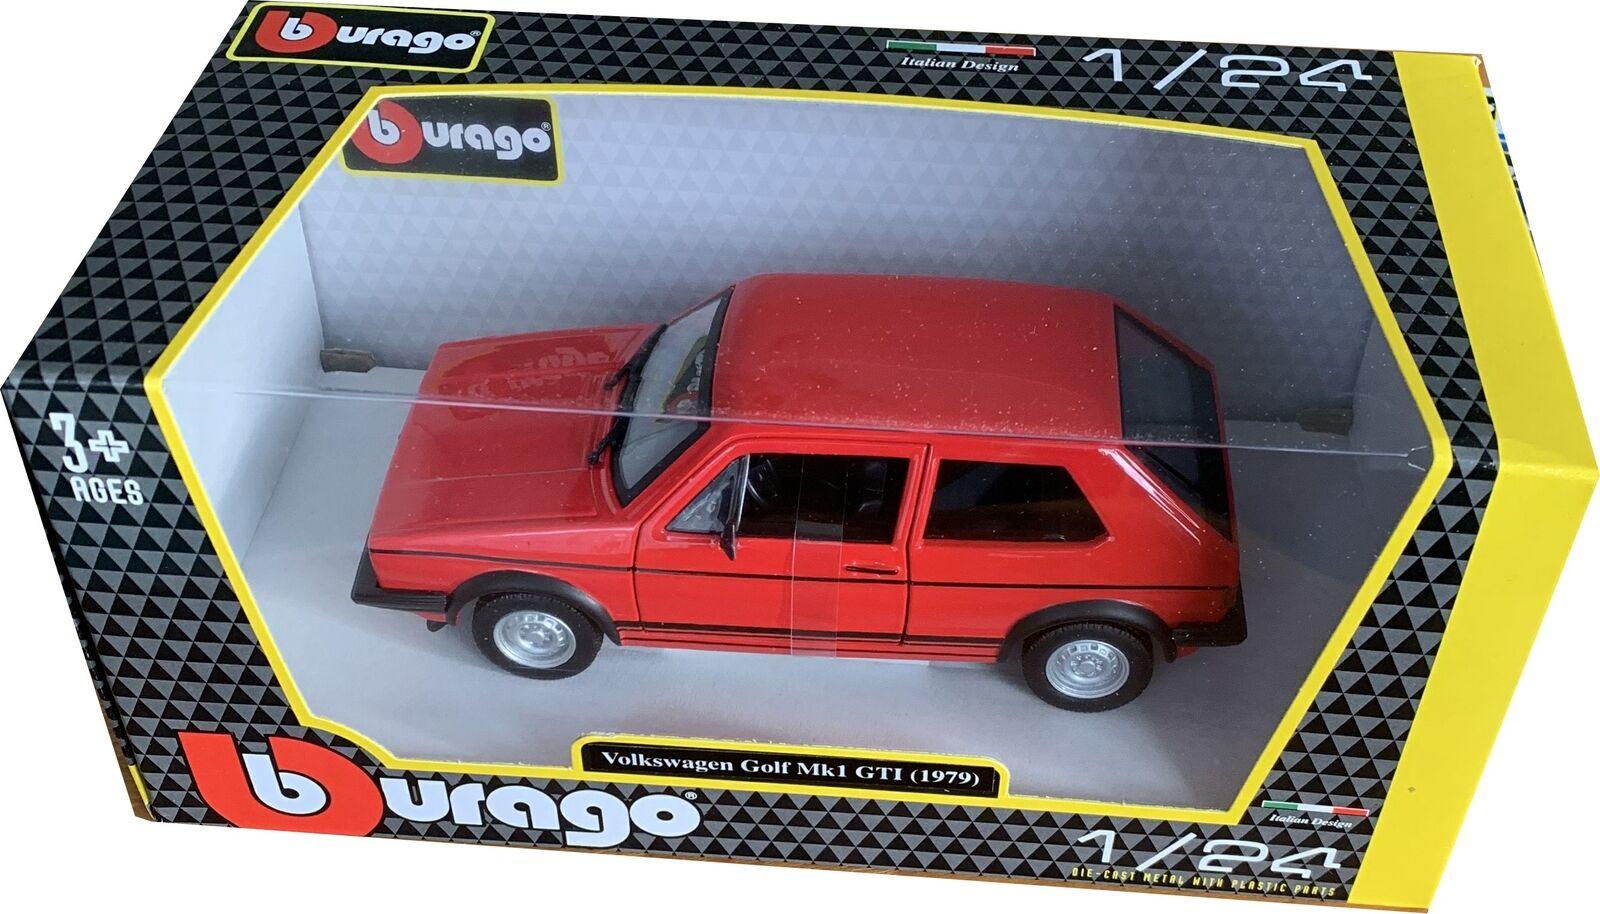 VW Golf GTi mk1 1979 in red 1:24 scale model from Bburago